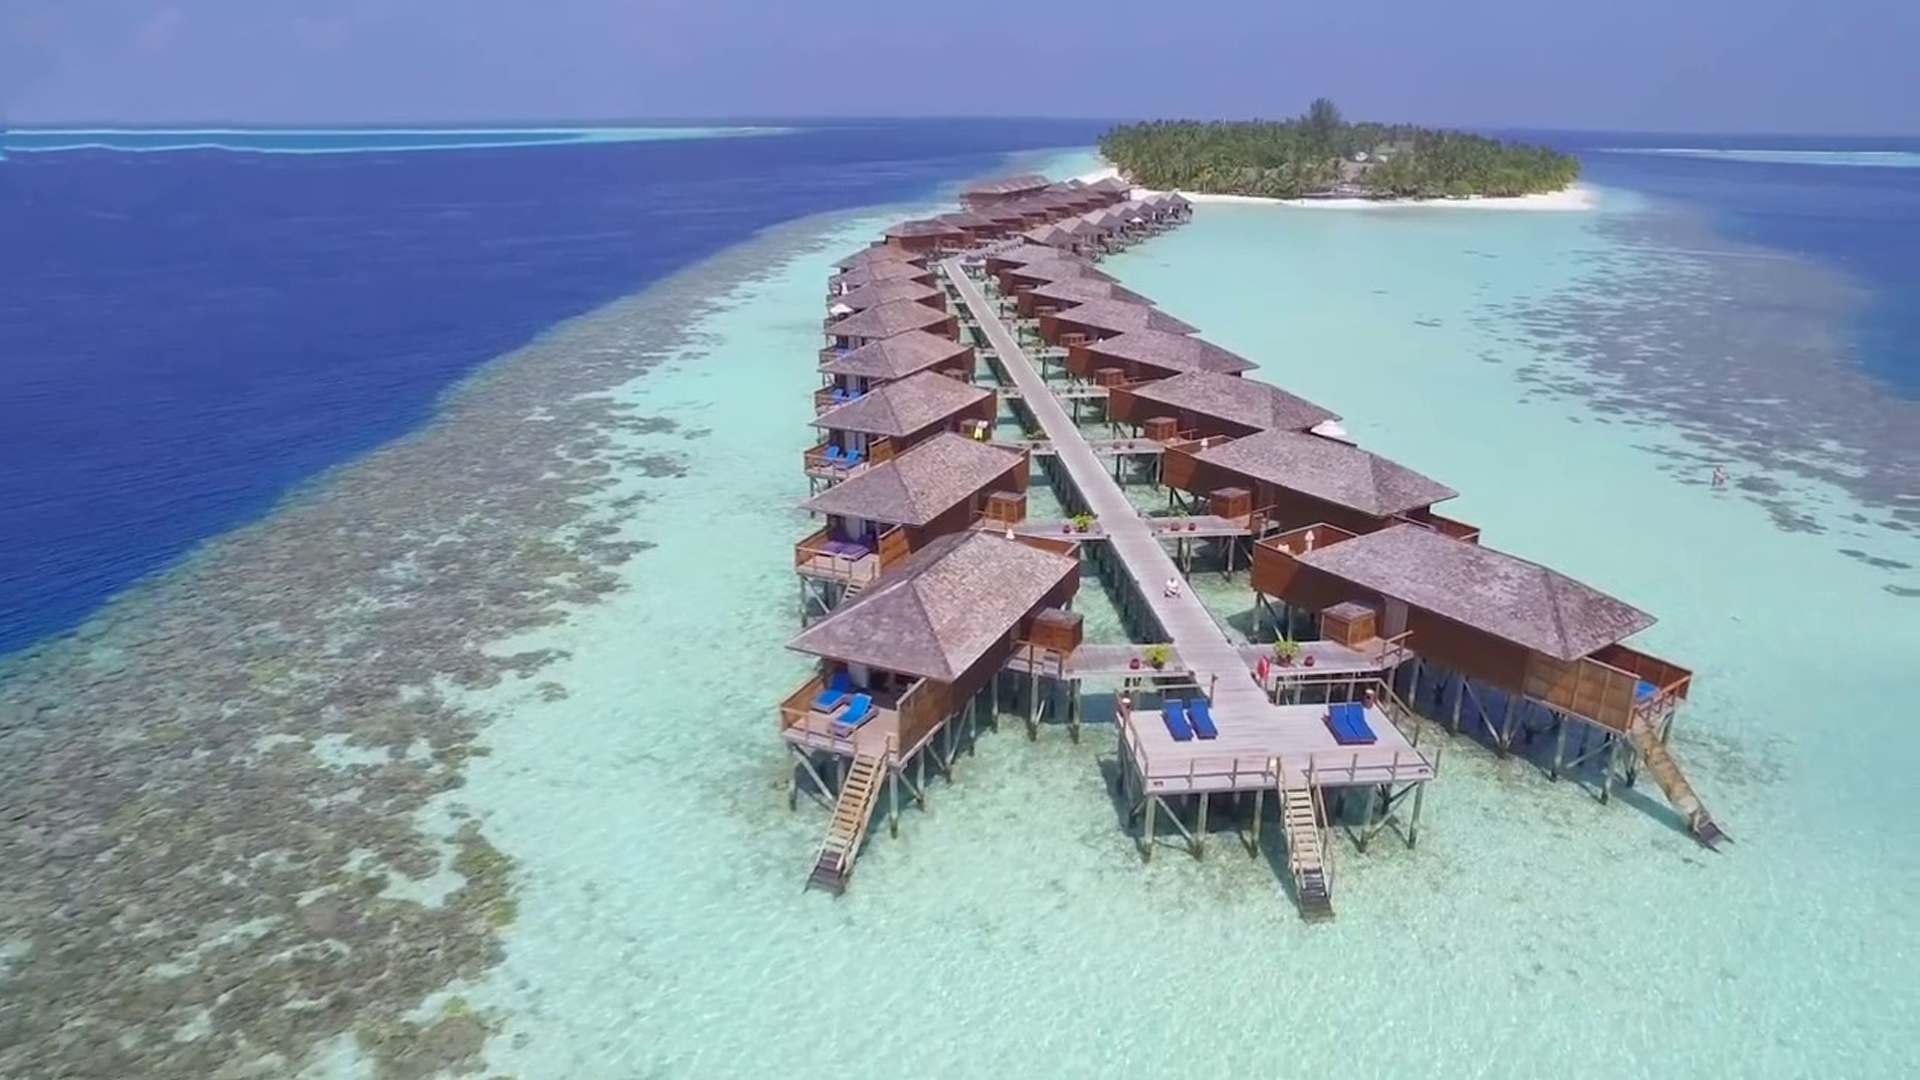 Vilamendhoo island resort. Виламенду отель Мальдивы. Мальдивы отель Vilamendhoo. Vilamendhoo Island Resort 4. Мальдивы Meeru Island.